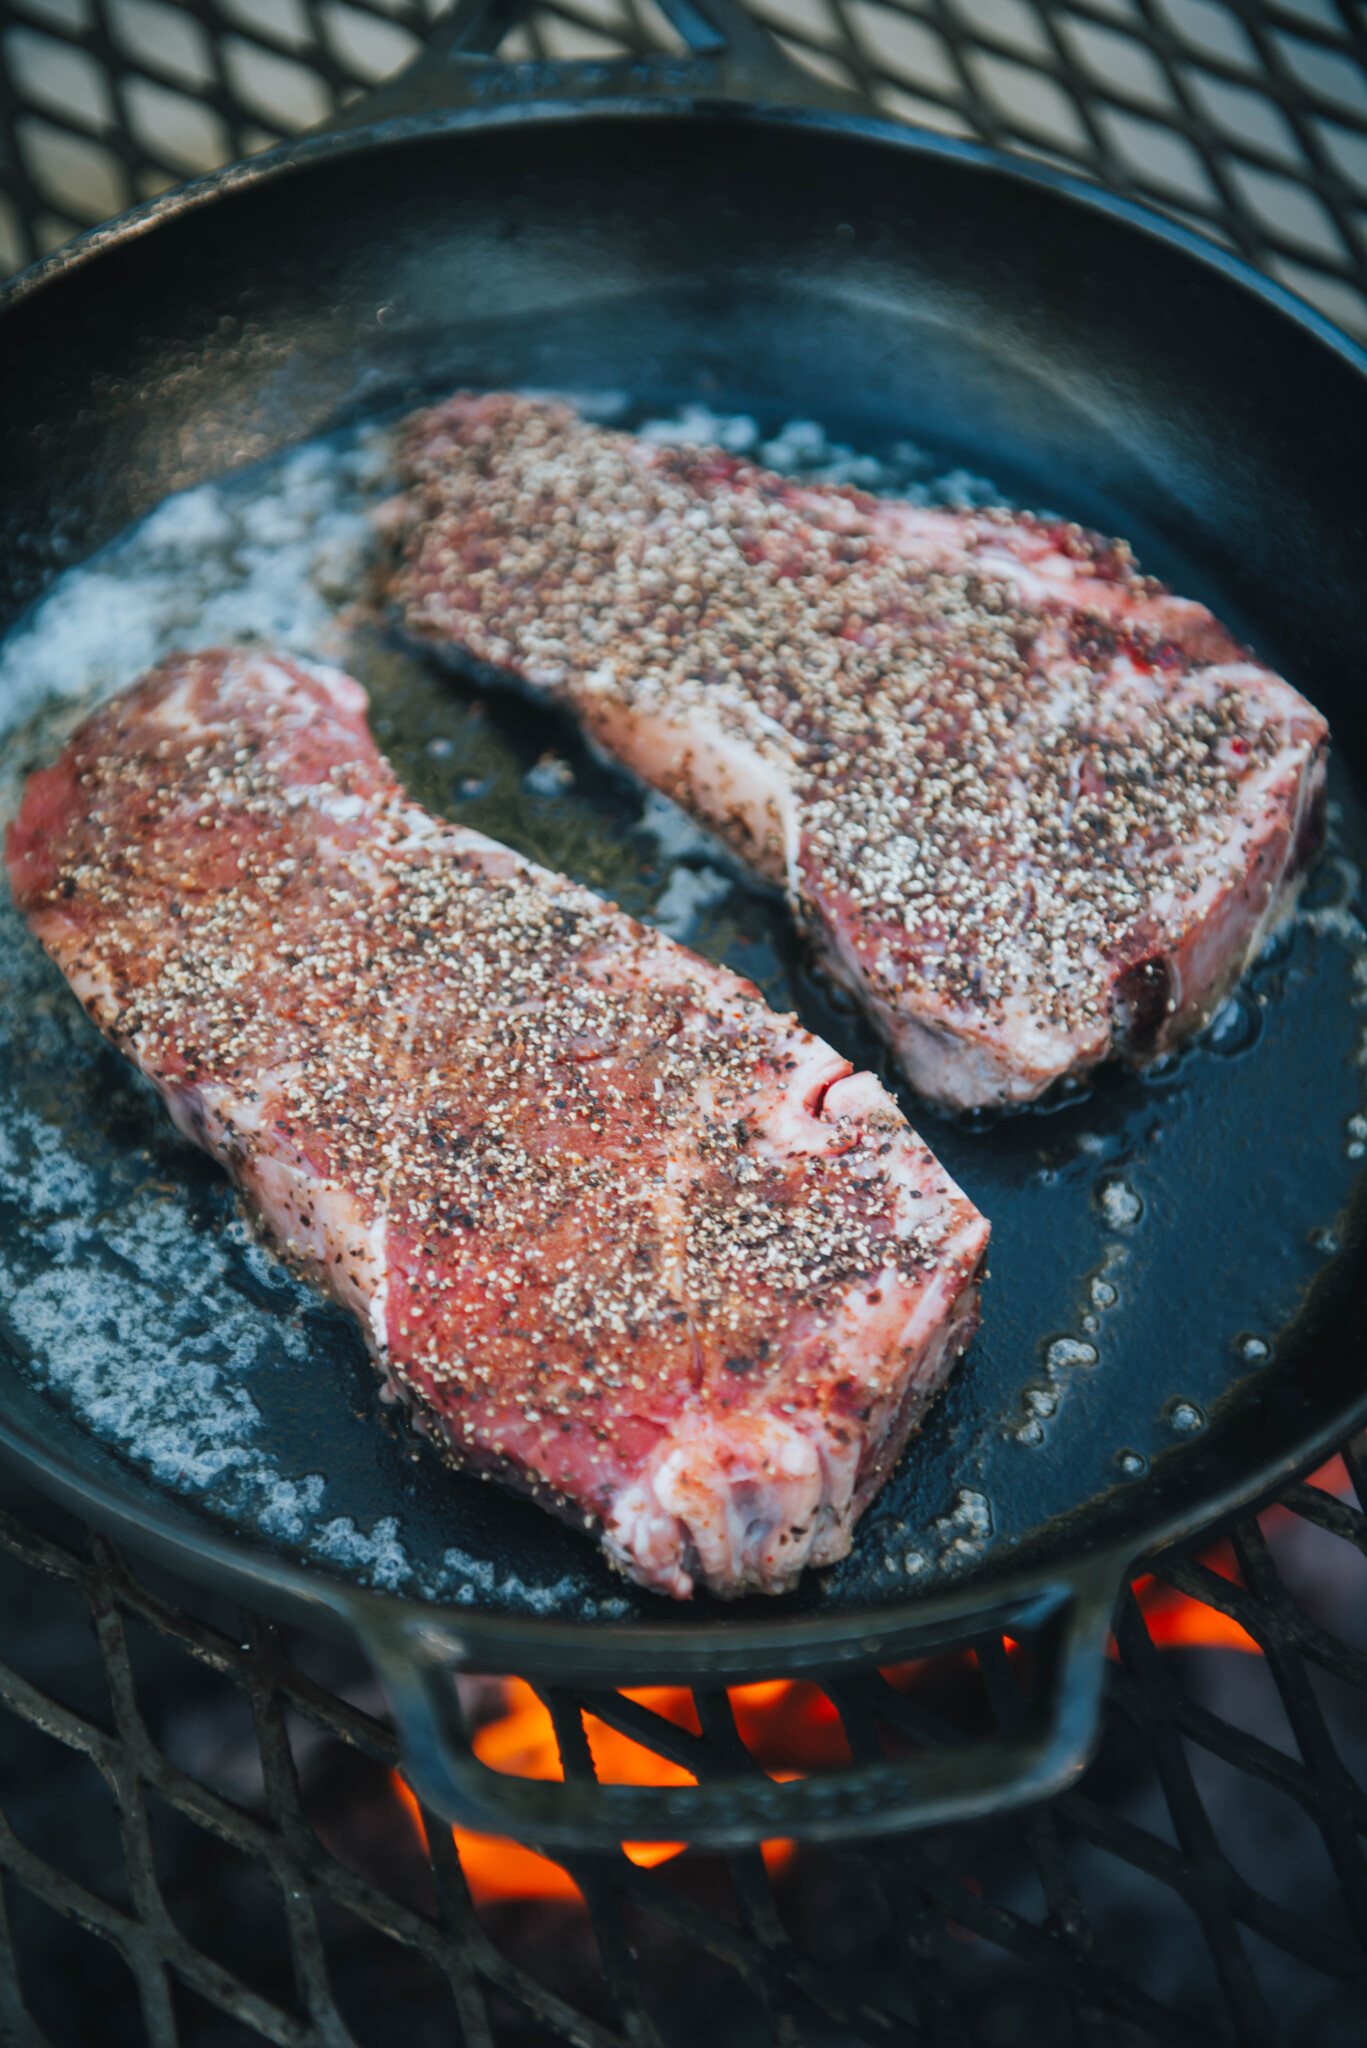 Steaks in hot skillet over campfire.